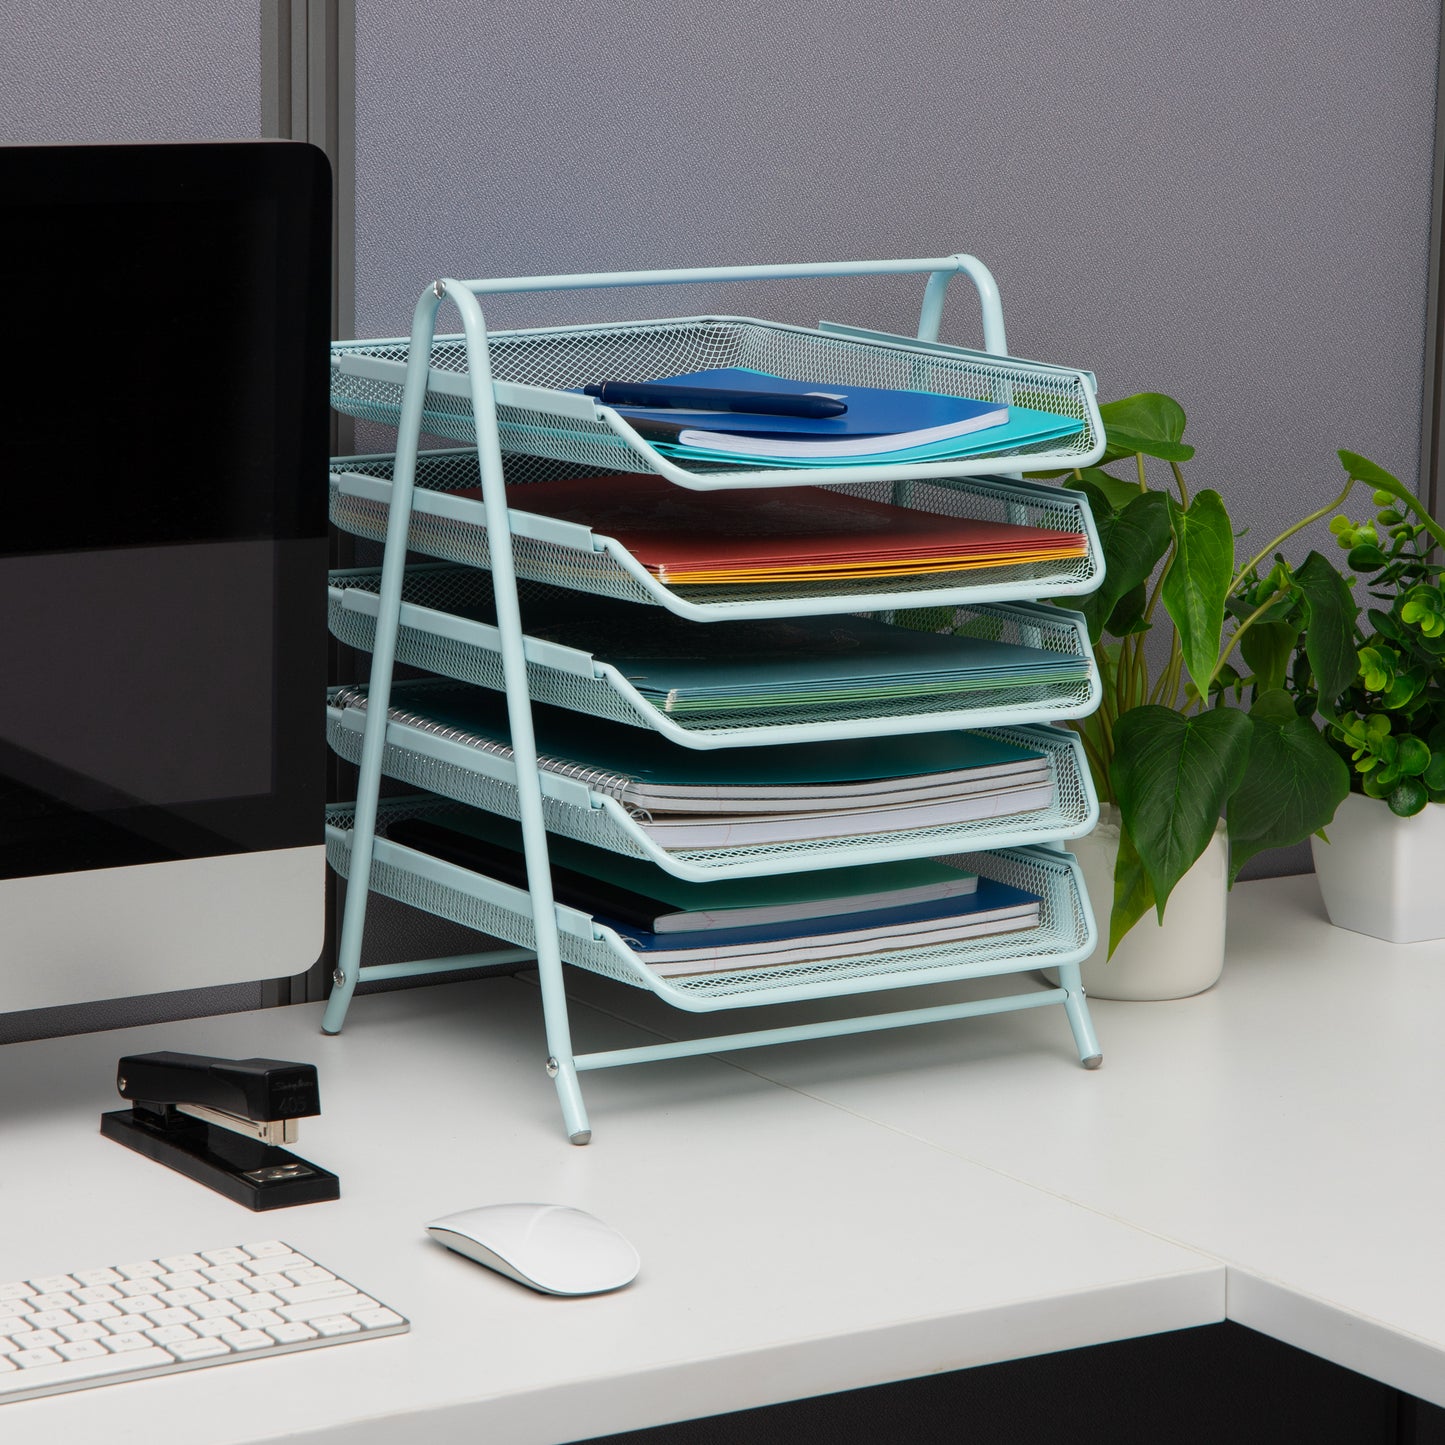 Mind Reader 5-Tier Paper Tray, Desktop Organizer, File Storage, Workspace, Office, Metal Mesh, 11.75"L x 14"W x 14.5"H